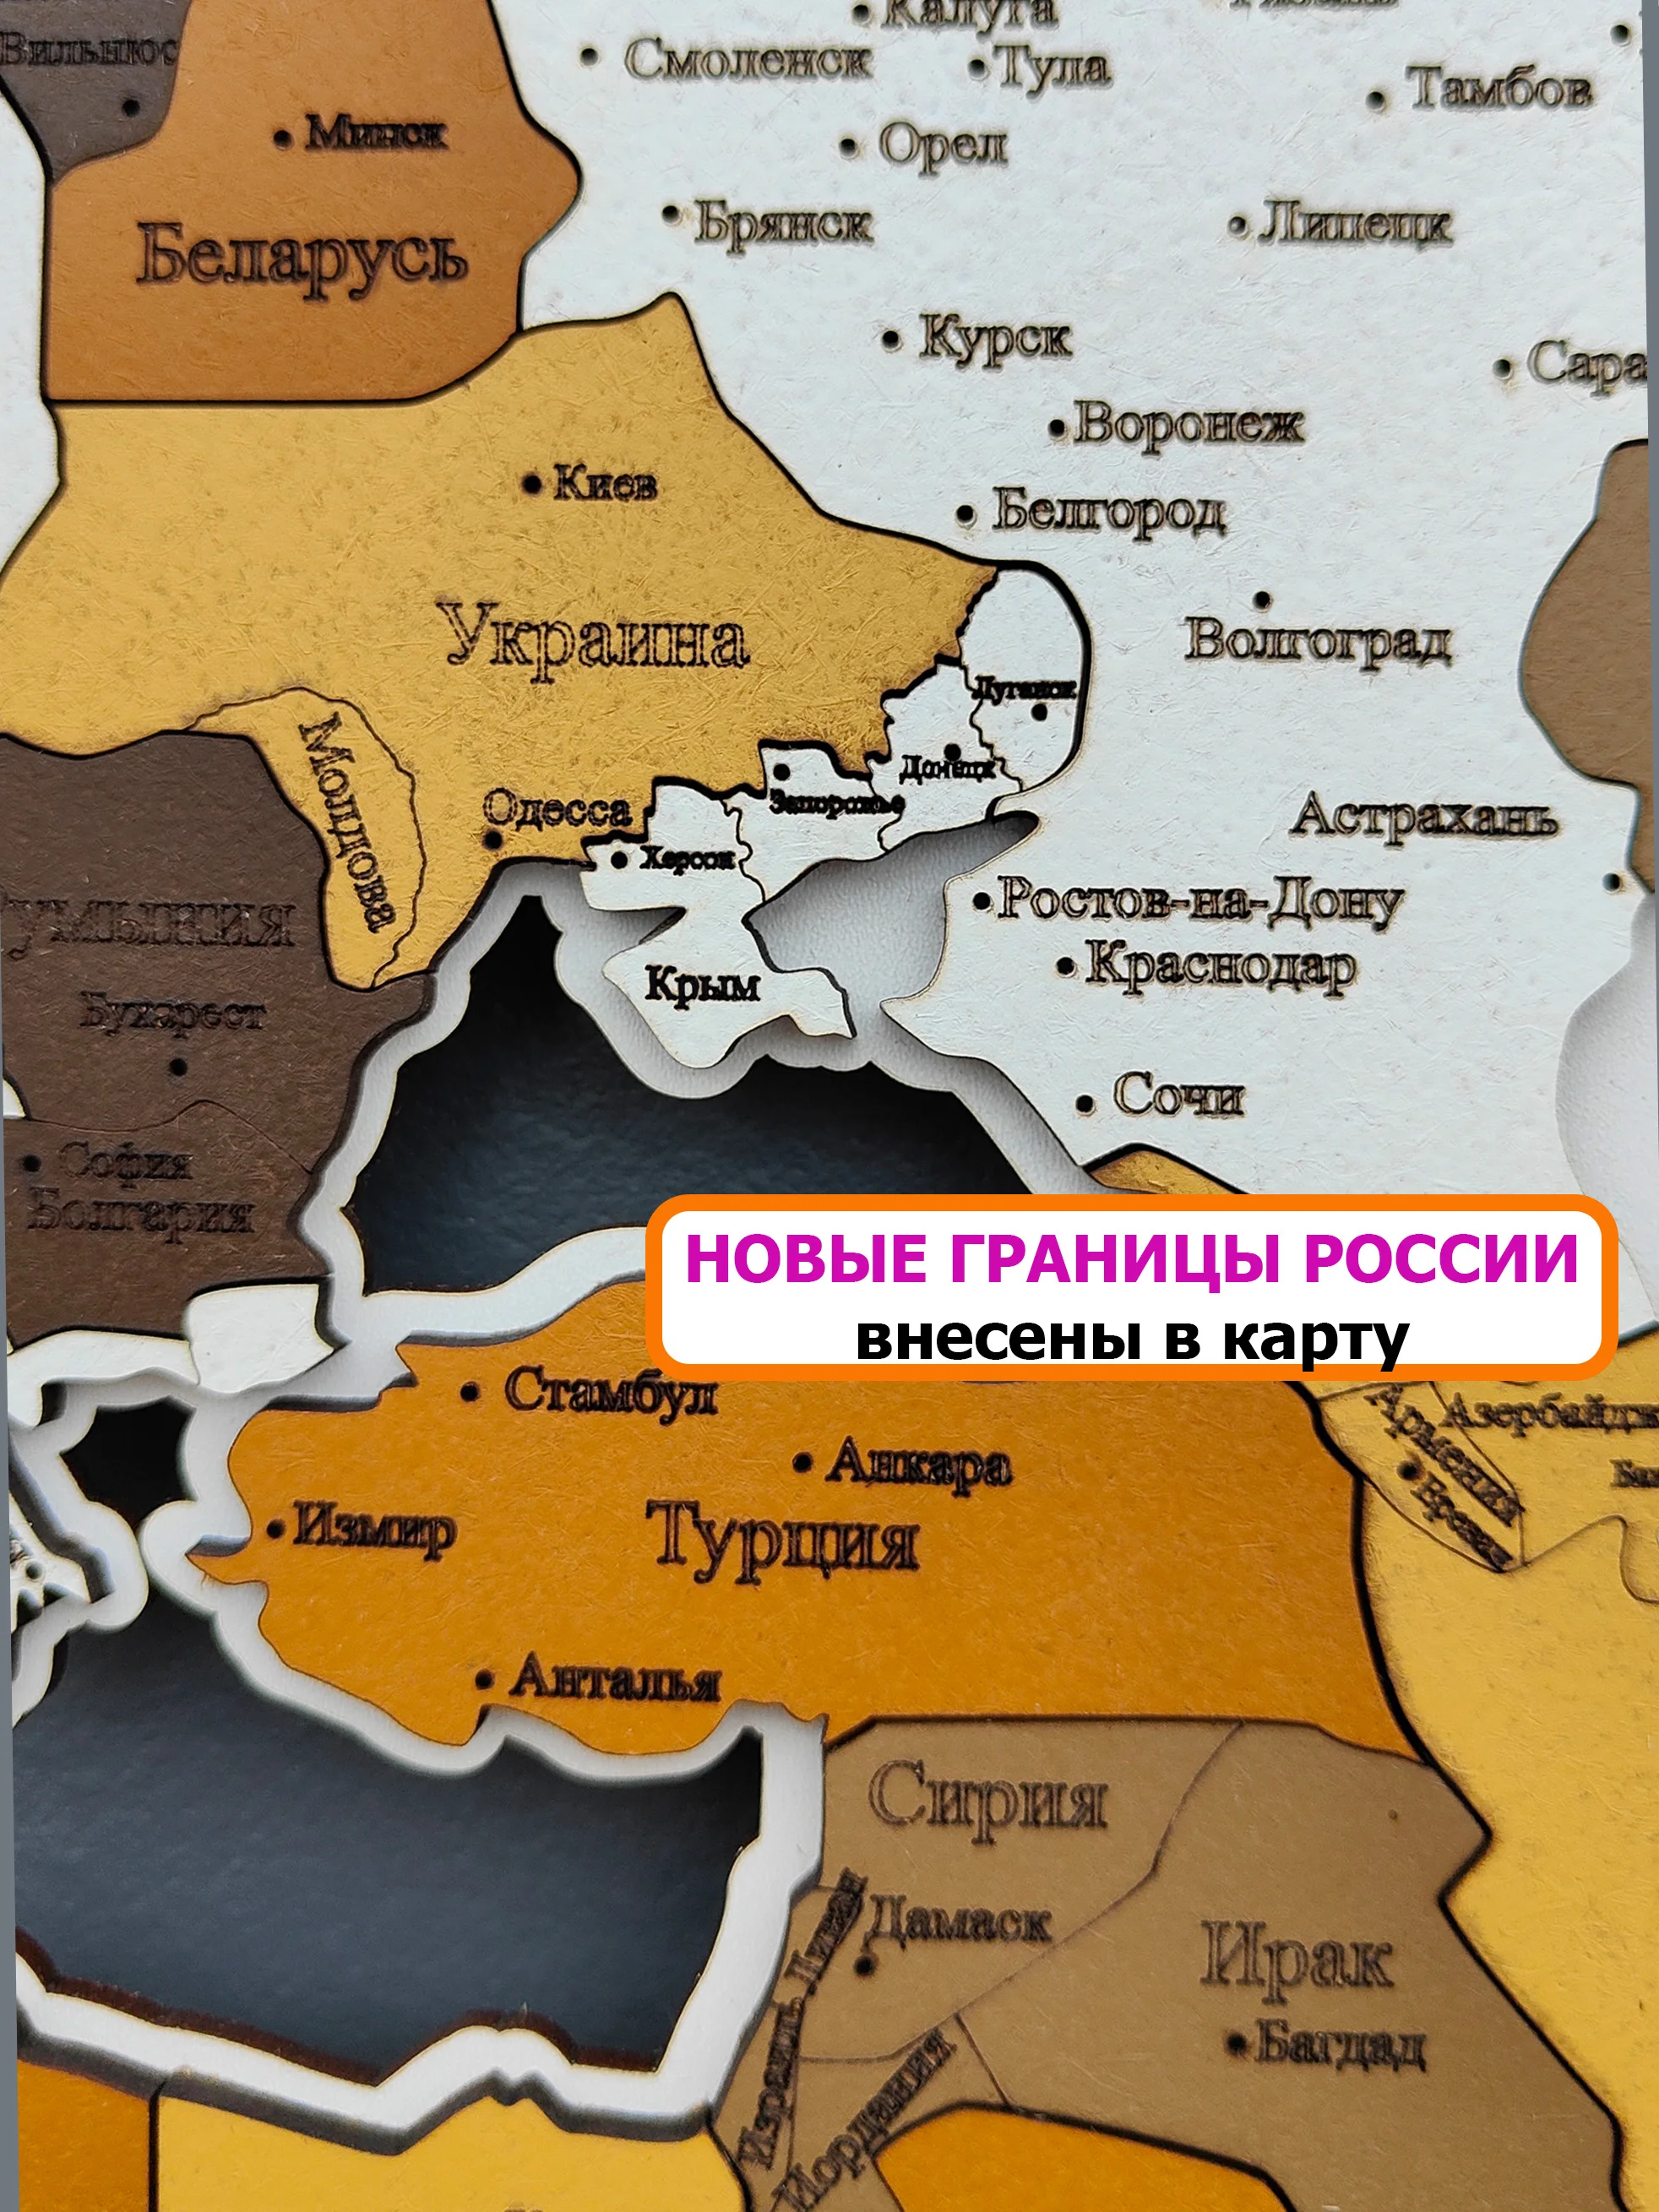 Карта мира на стену из дерева на русском языке 1600*950, многоцветная,одноуровневая, настенный декор для дома, офиса